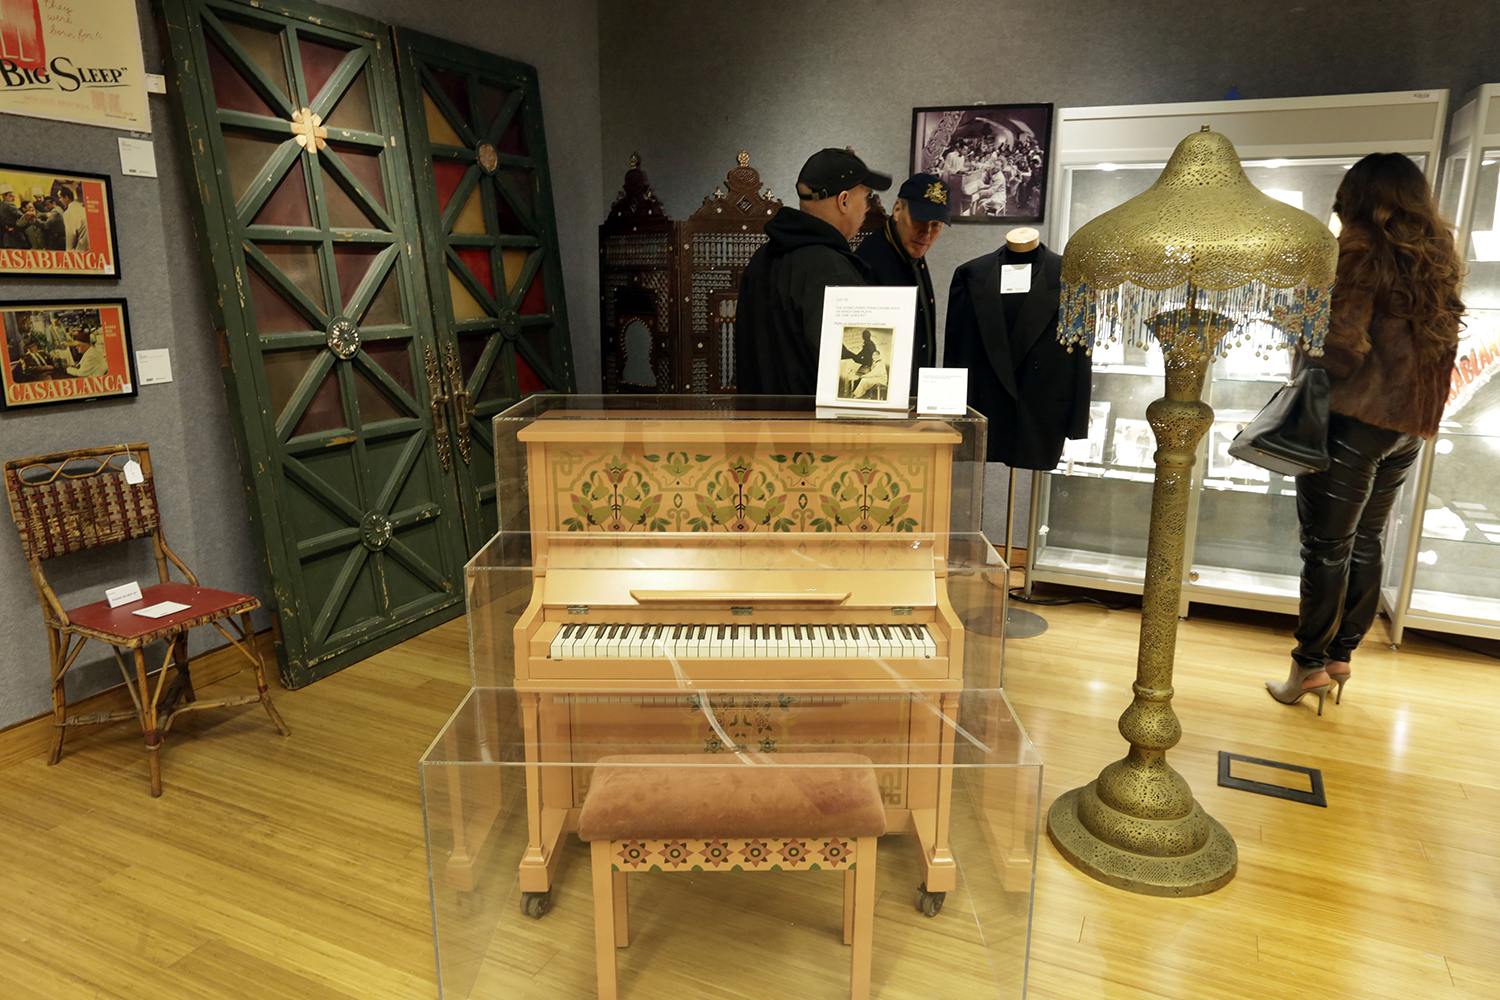 Subastan el piano de la película «Casablanca» en 3,4 millones de dolares